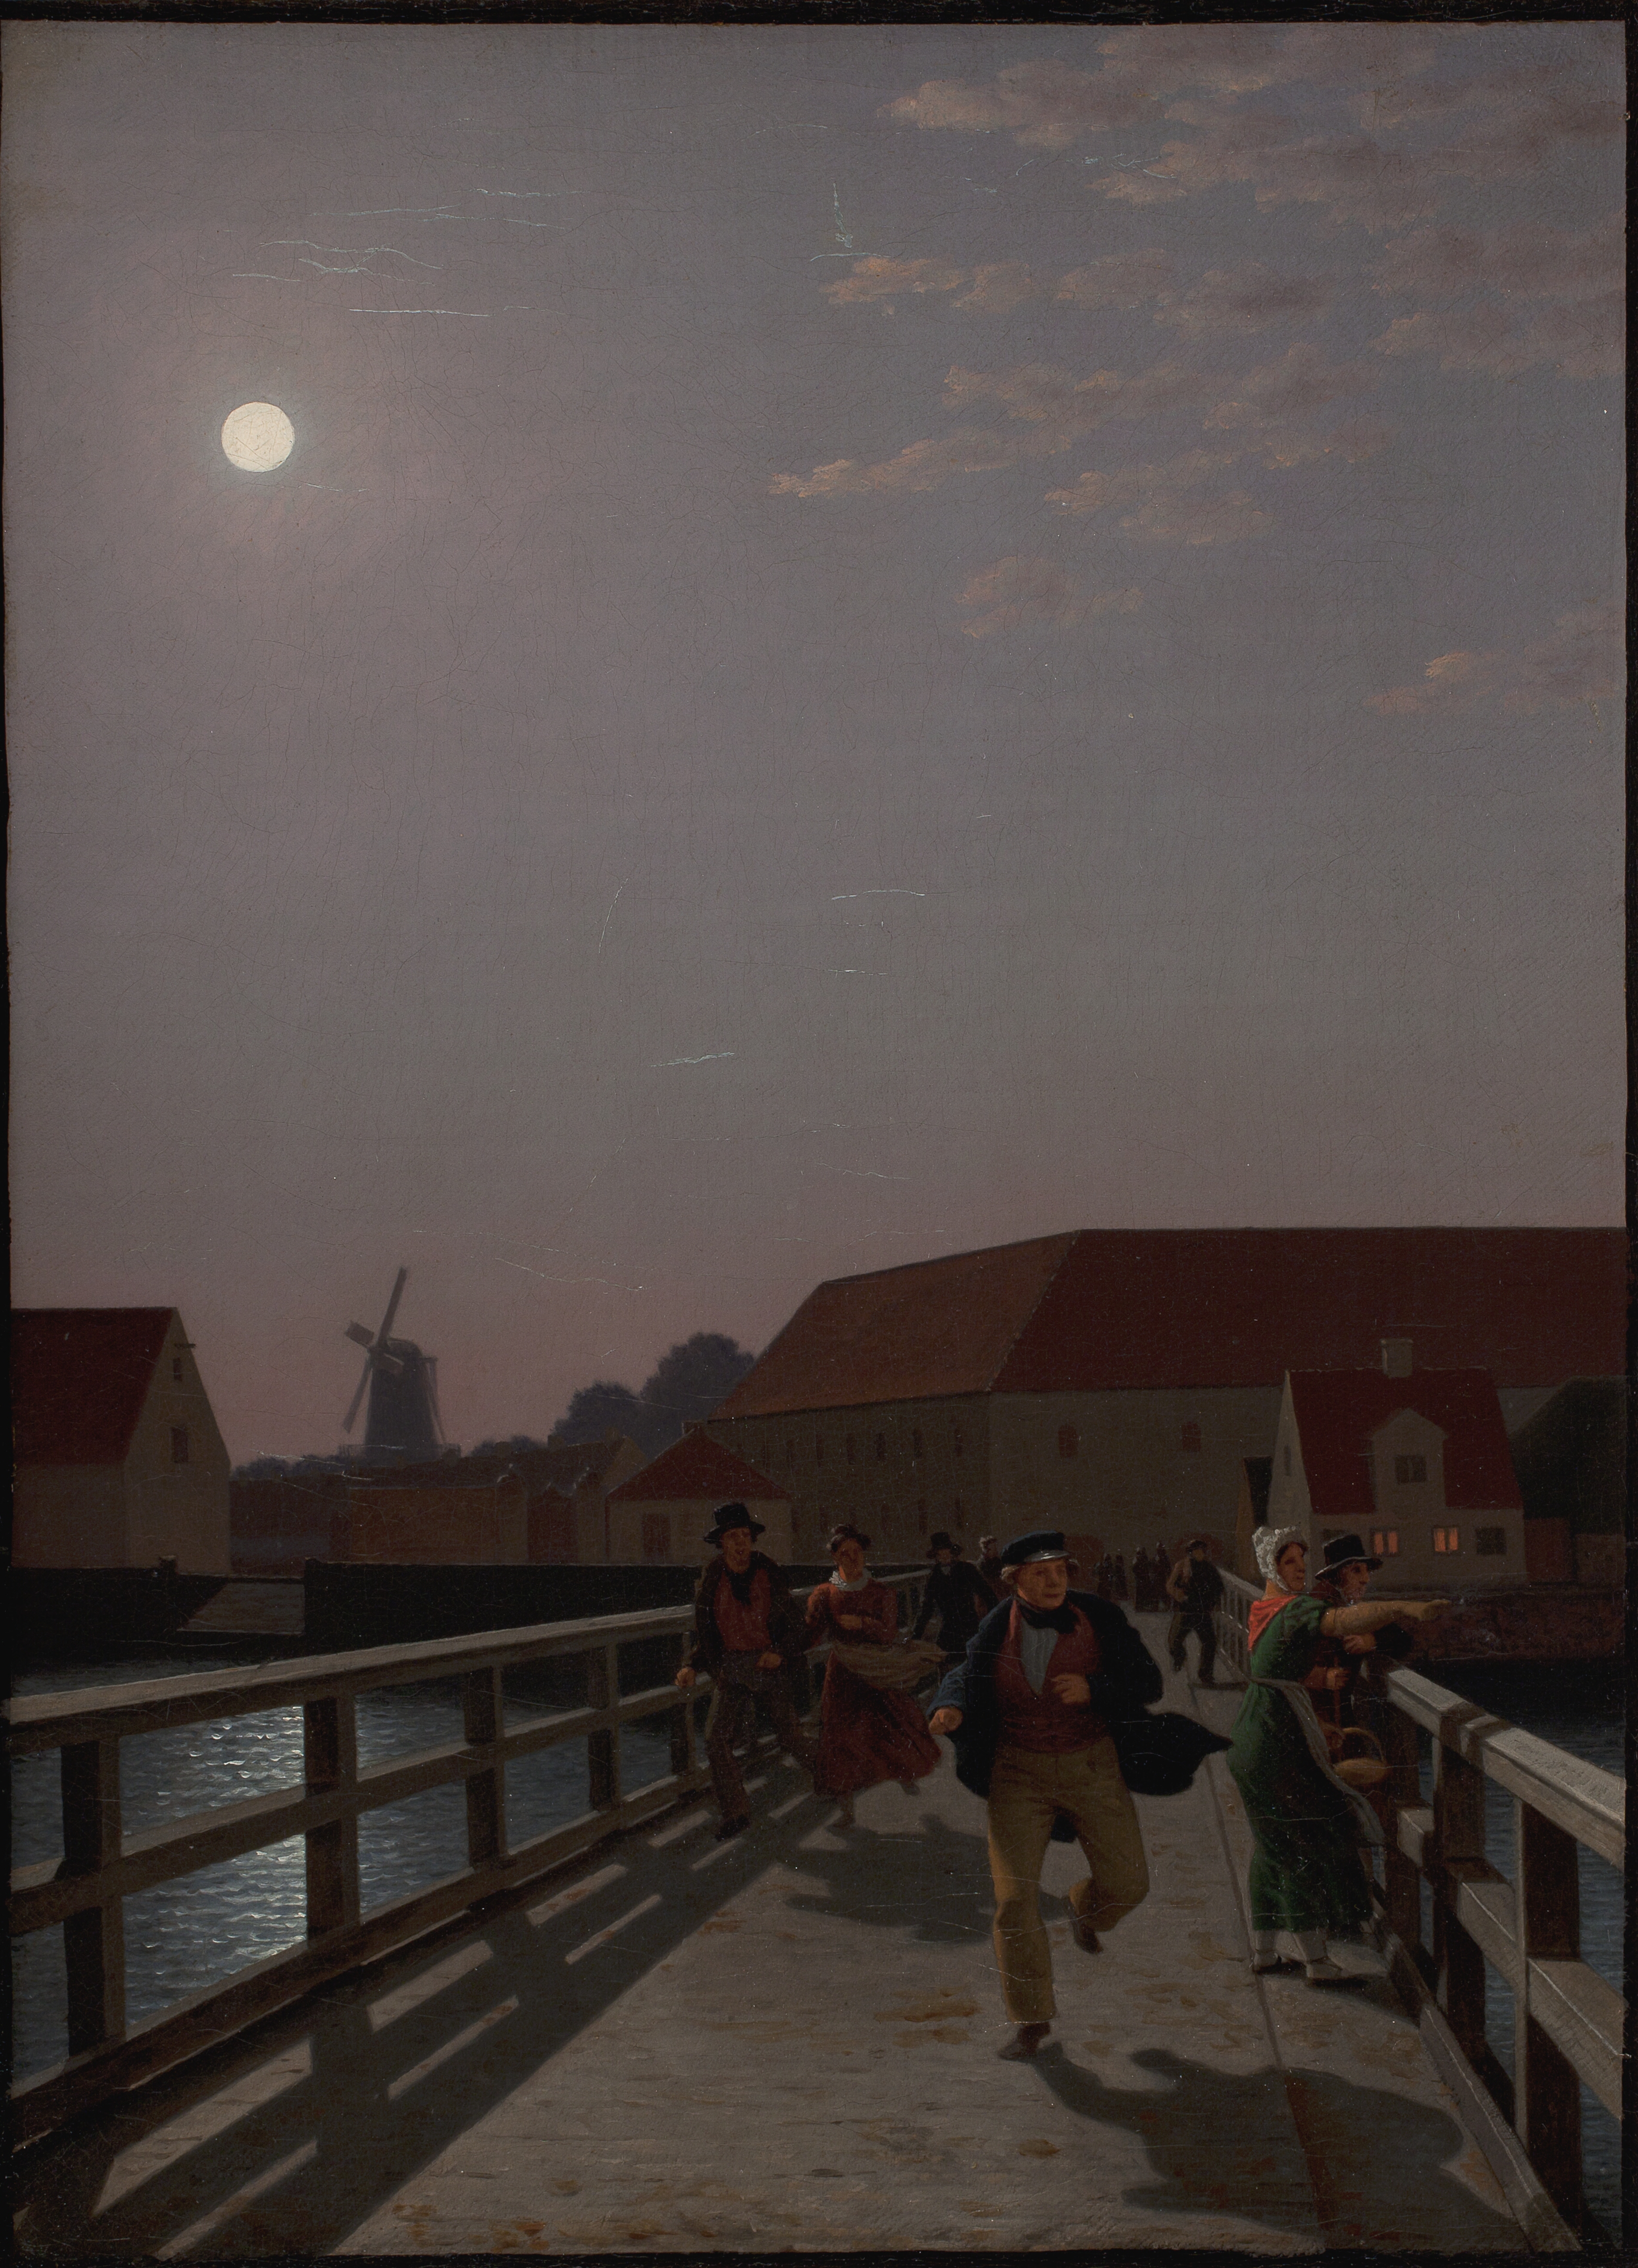 Langebro, Copenhagen, in the Moonlight with Running Figures by C.W. Eckersberg - 1836 - 45.5 x 33.5 cm Statens Museum for Kunst